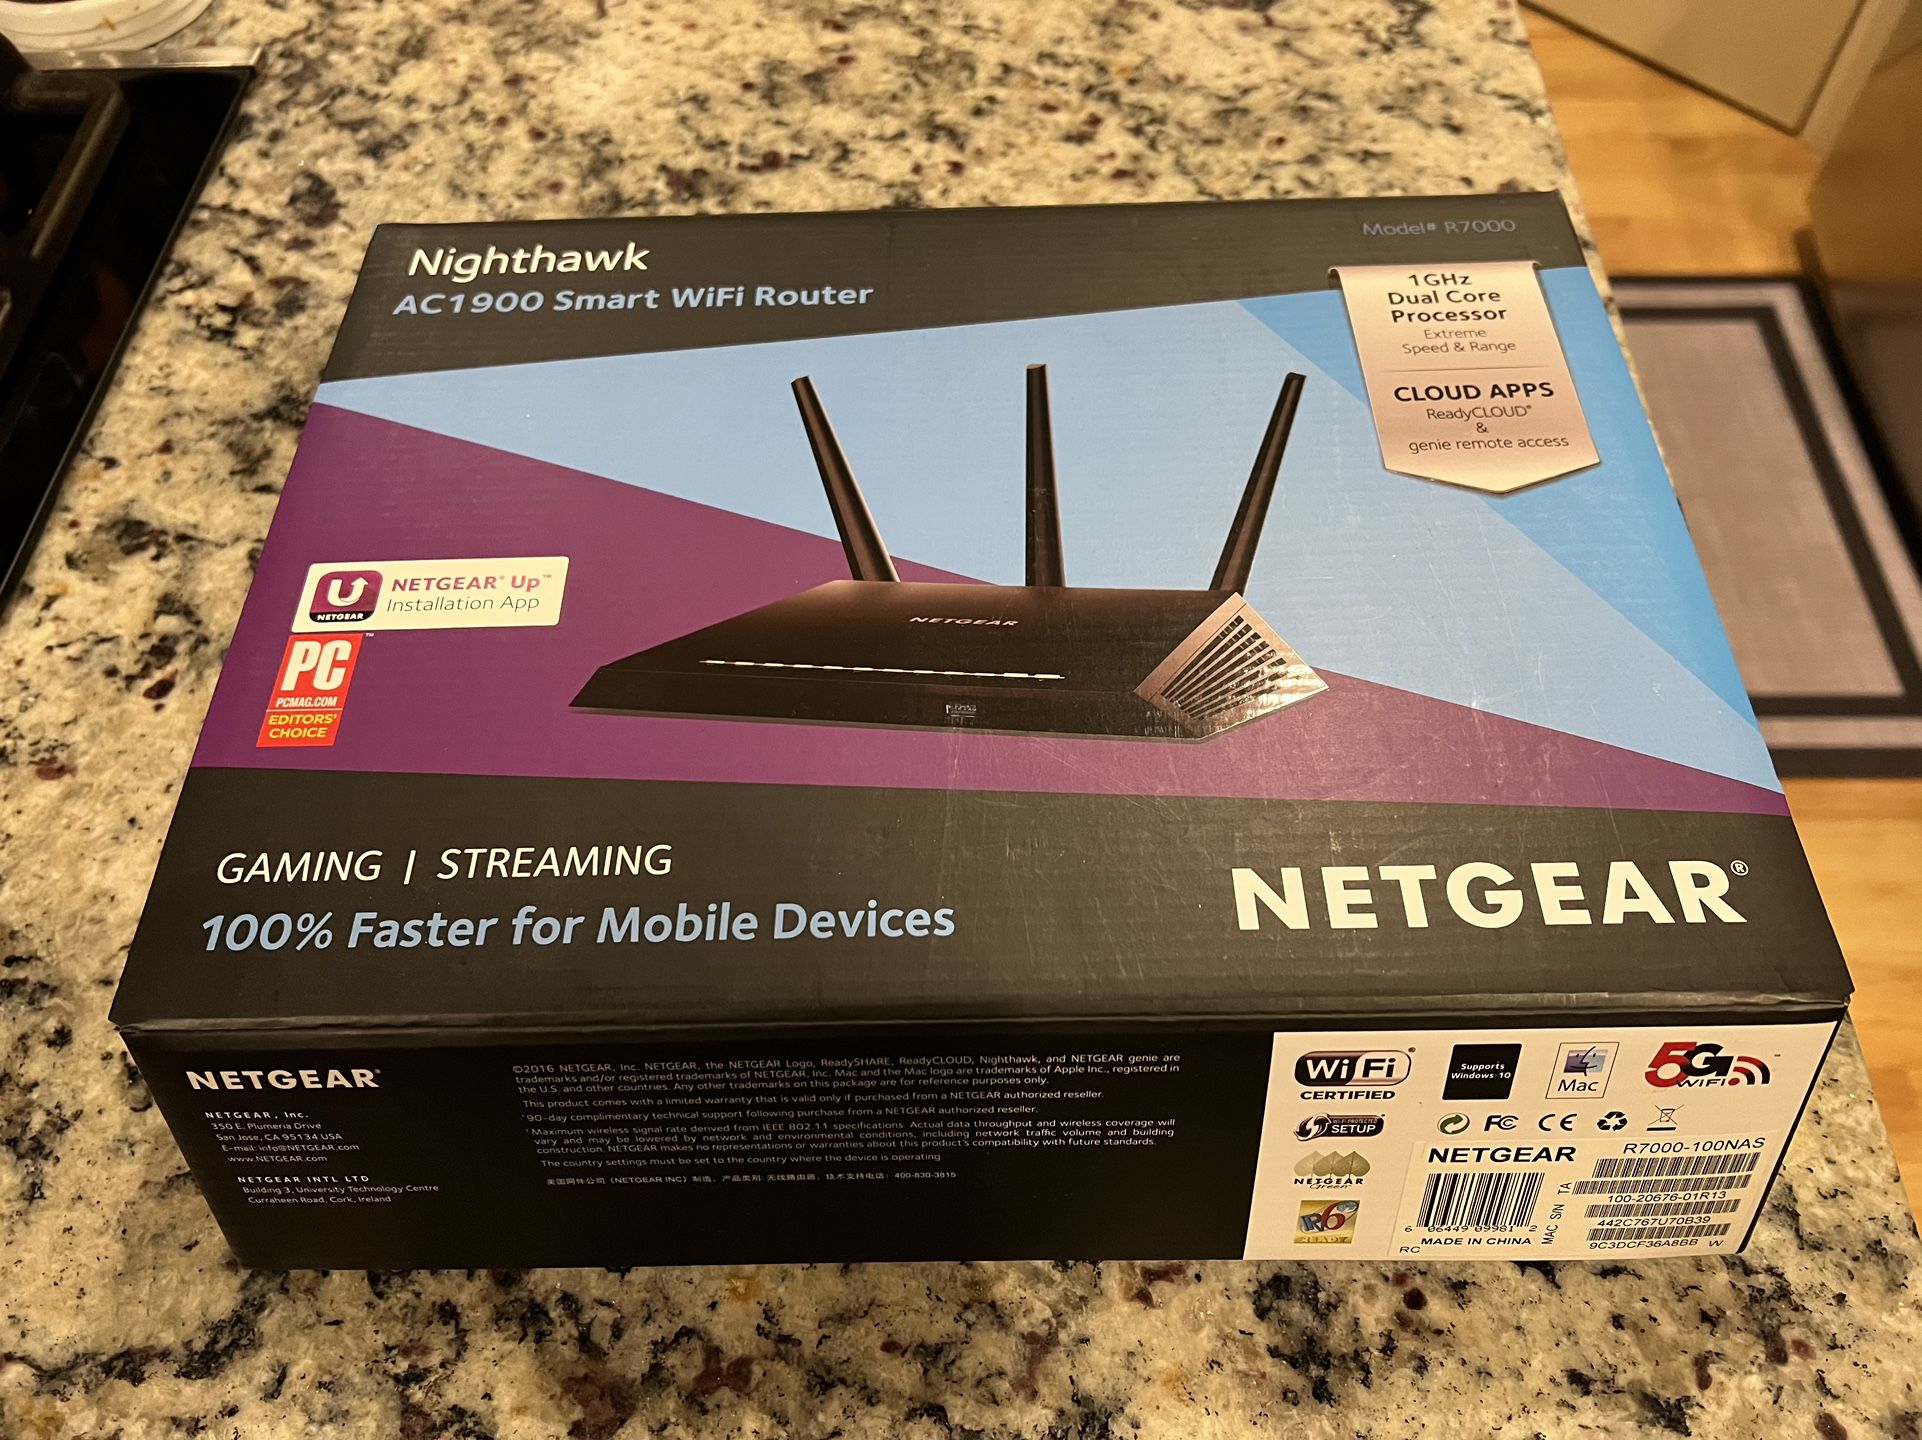 NETGEAR Nighthawk AC1900 WiFi Router (R7000)